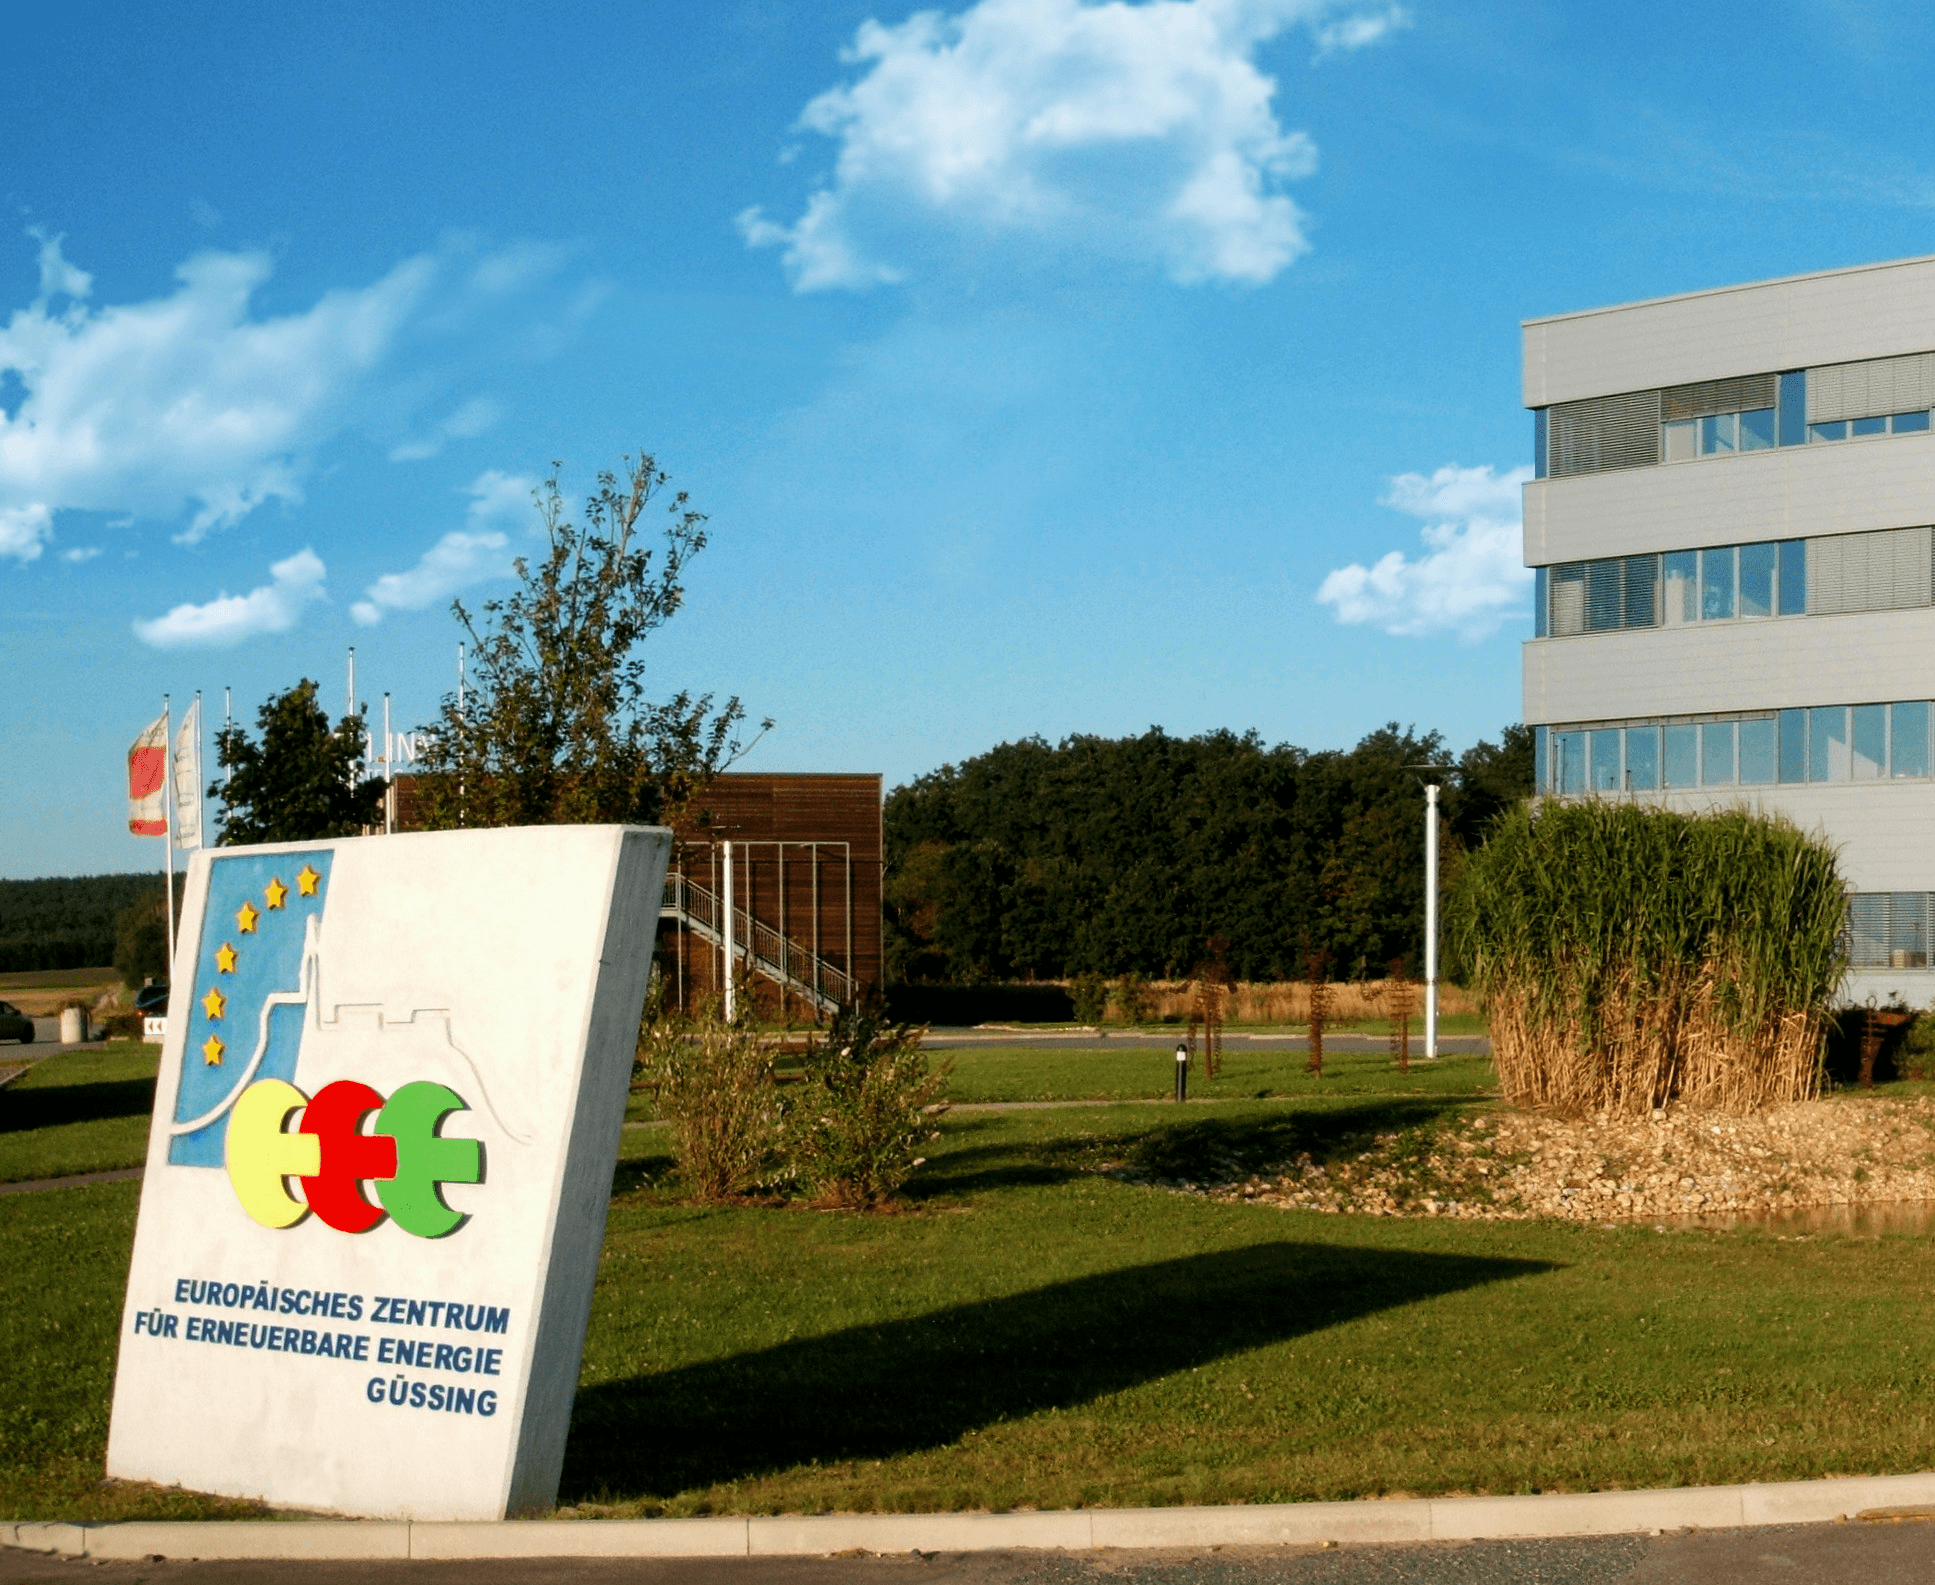 Vorschau - Foto 1 von Europäisches Zentrum für Erneuerbare Energie Güssing GmbH